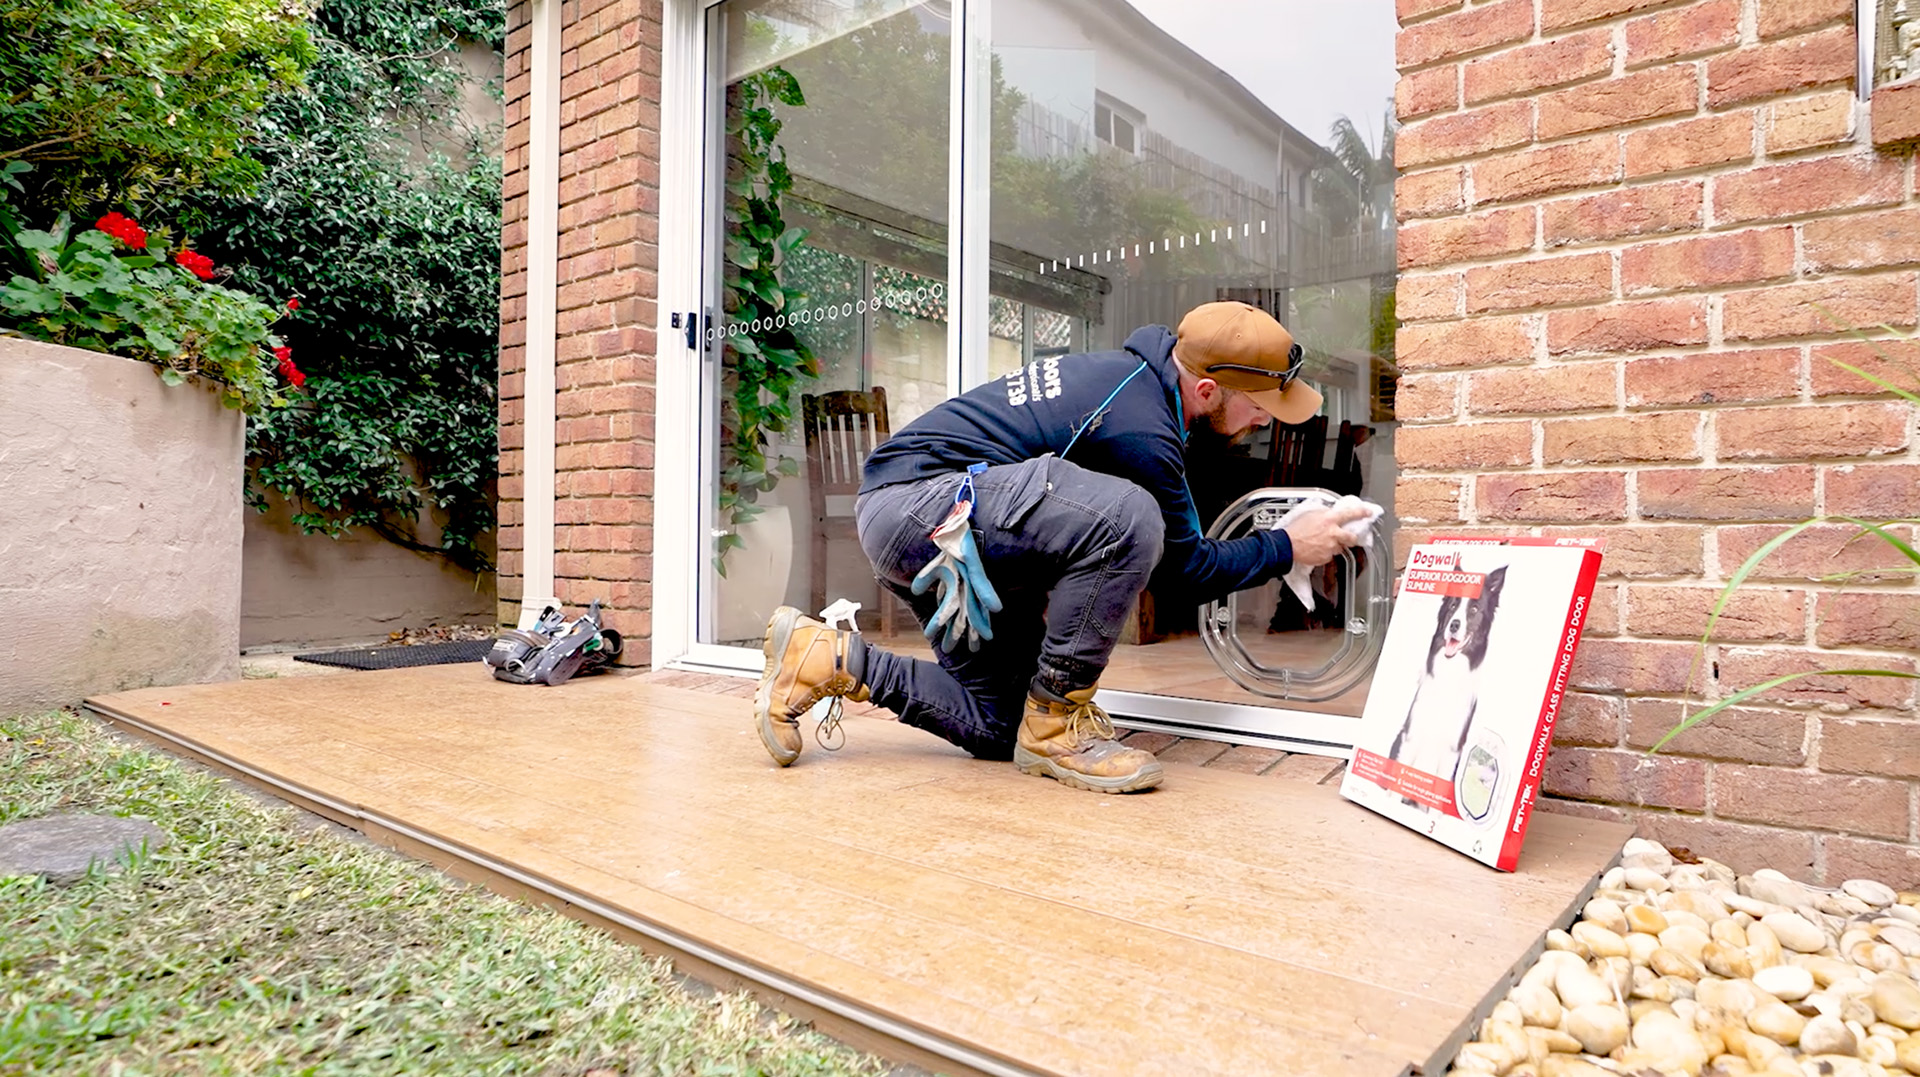 Sydney pet Door installation specialist installing a large dog door in glass door.